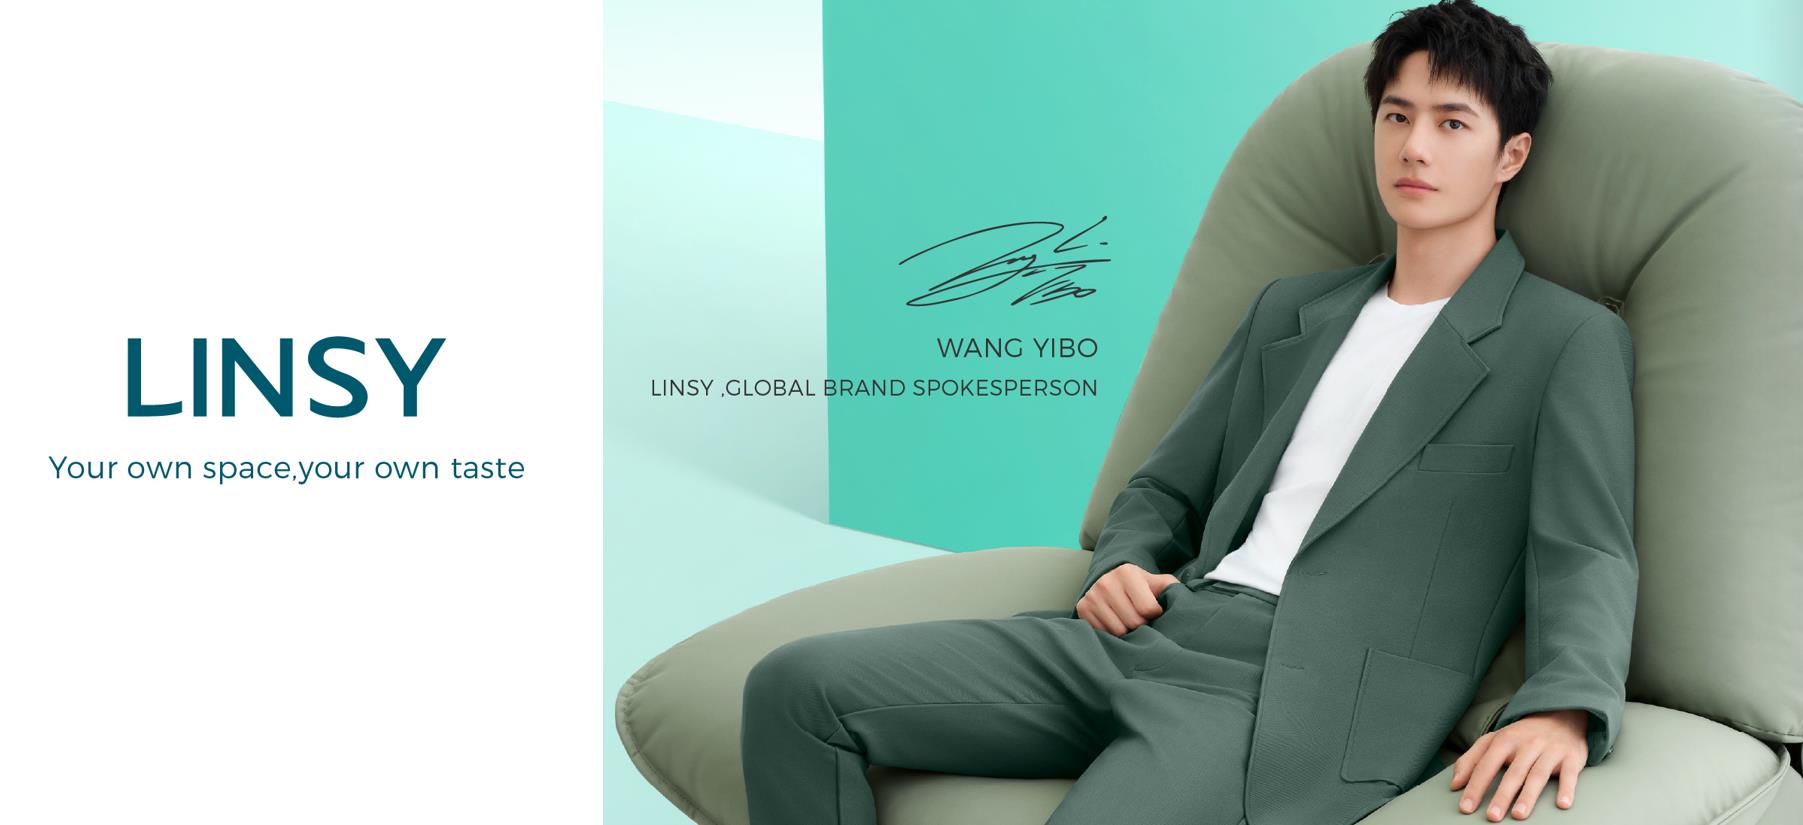 WANG YIBO โฆษกแบรนด์ระดับโลกของ LINSY
